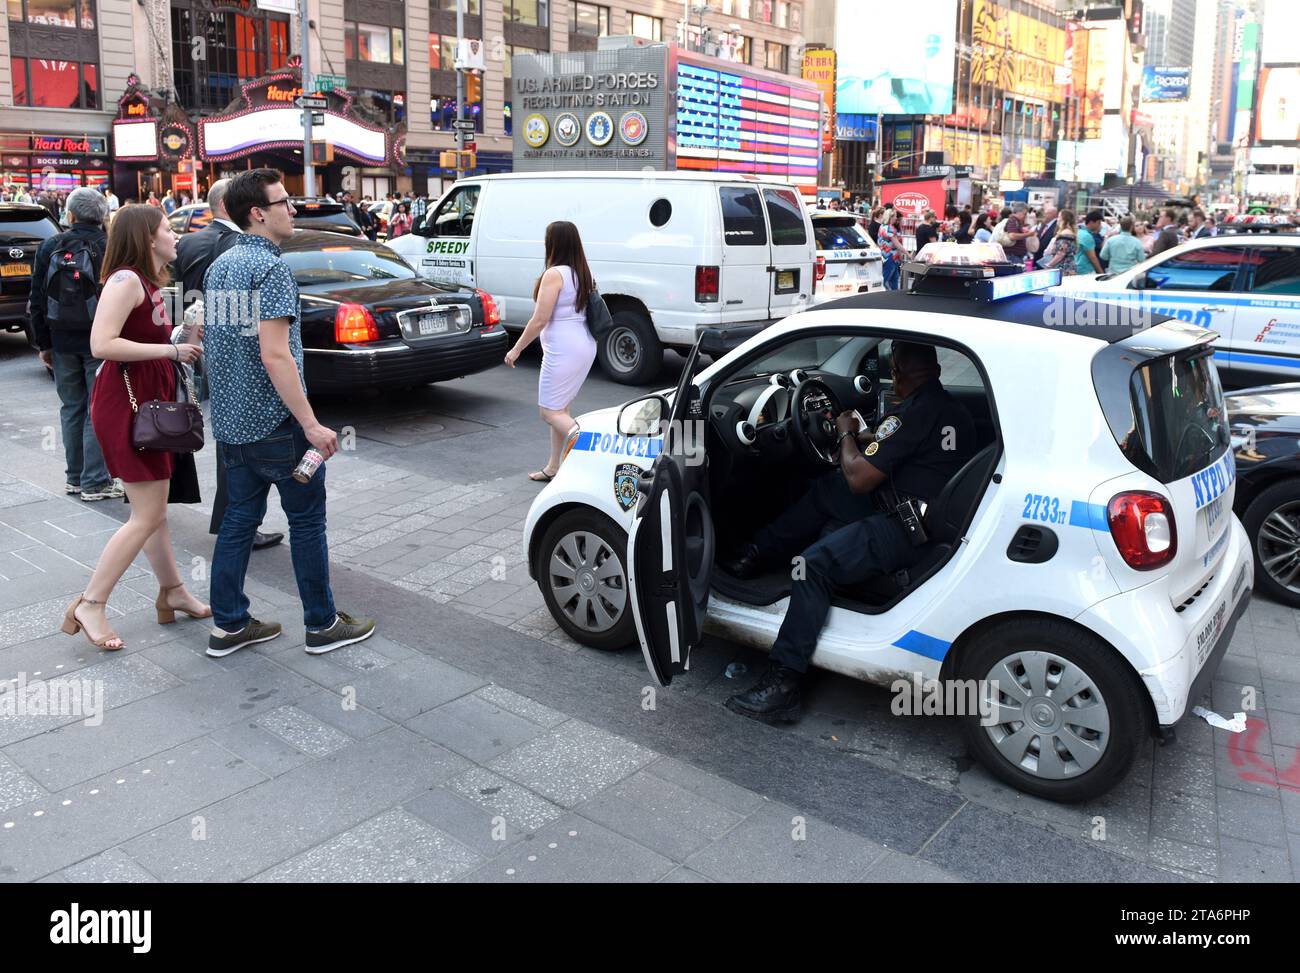 NEW YORK, USA - 24. Mai 2018: Polizist im Polizeiwagen, der seine Aufgaben auf den Straßen von Manhattan wahrnimmt. New York City Police Department (NYPD). Stockfoto